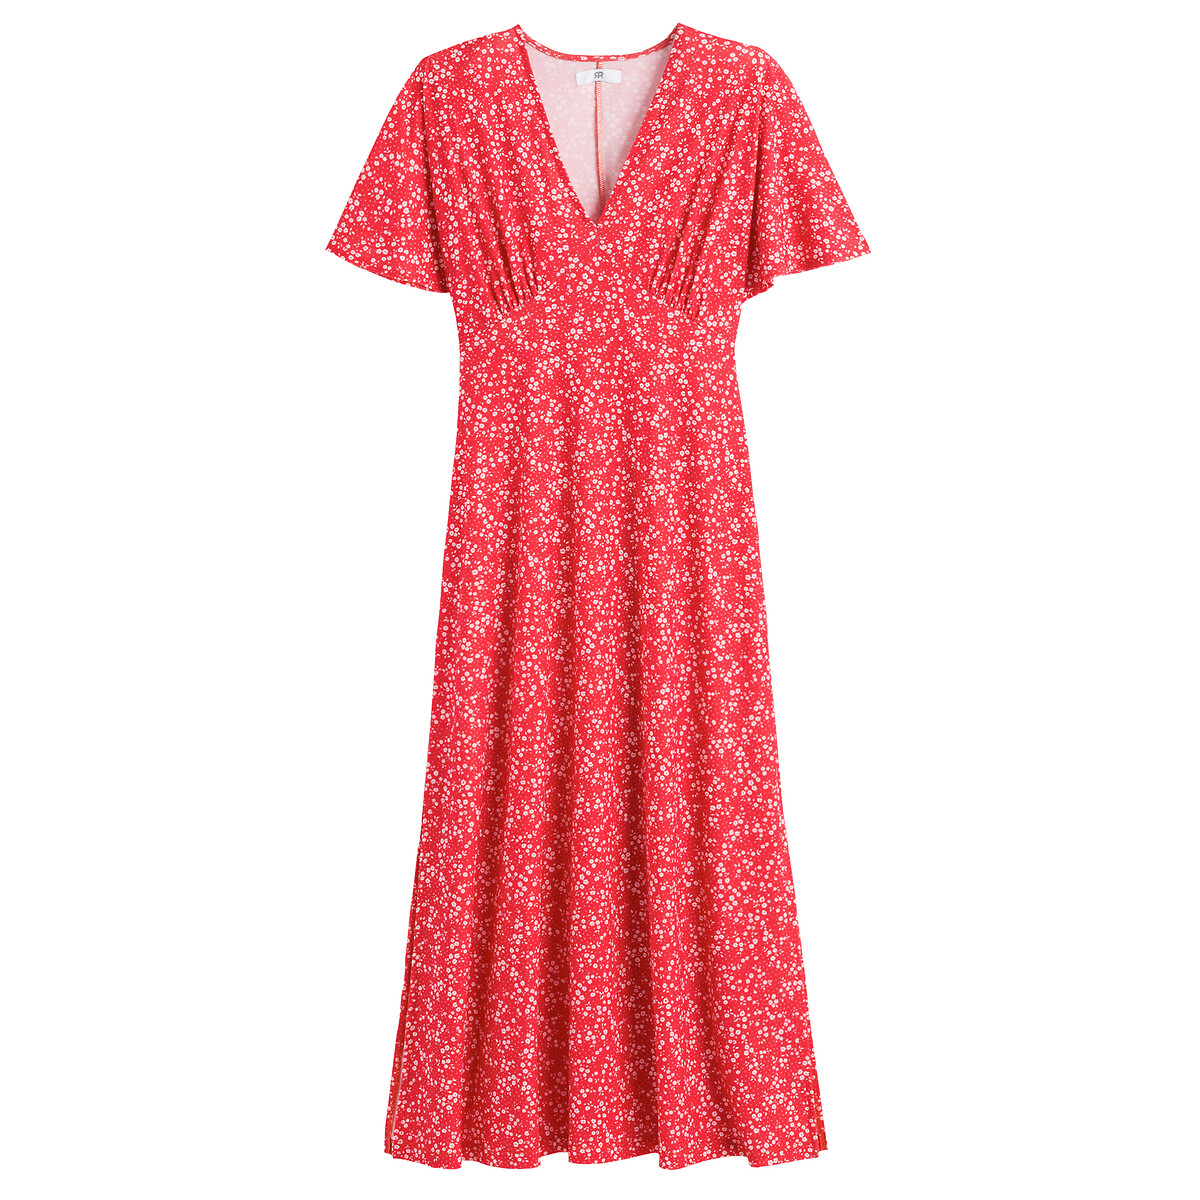 Платье Длинное расклешенное с принтом цветы 54 красный LaRedoute, размер 54 - фото 5